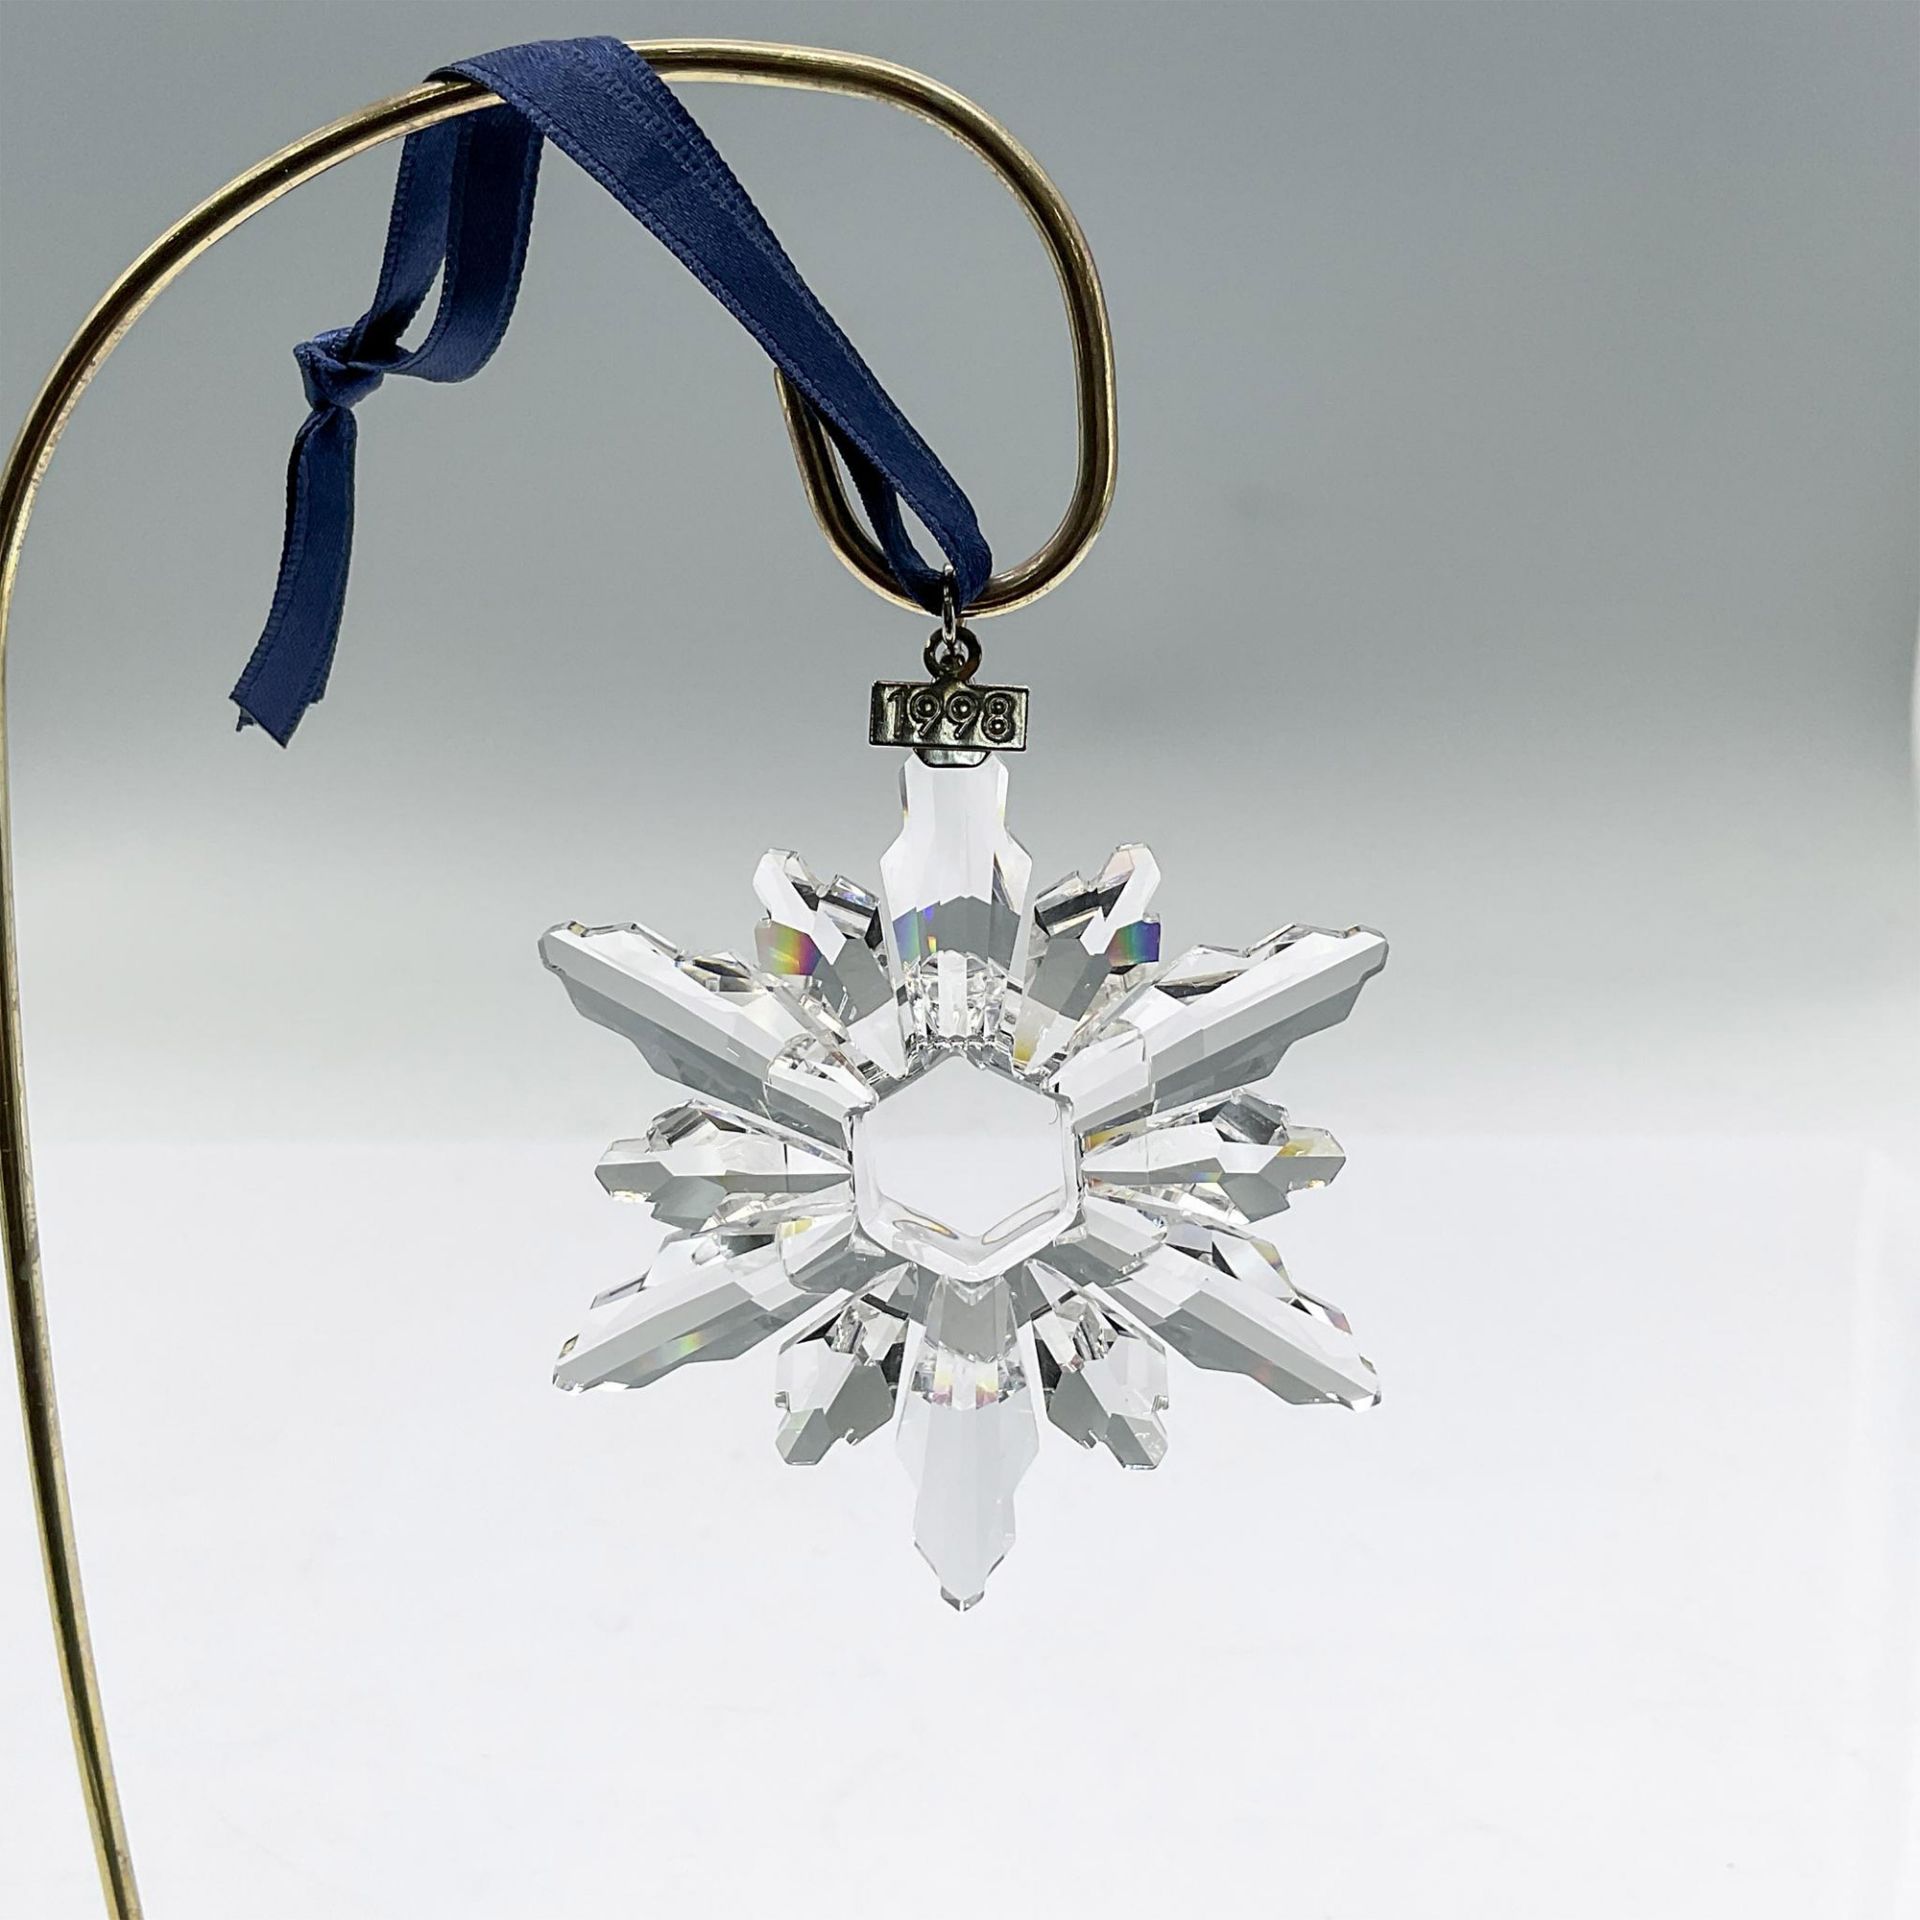 Swarovski Crystal Christmas Ornament 1998